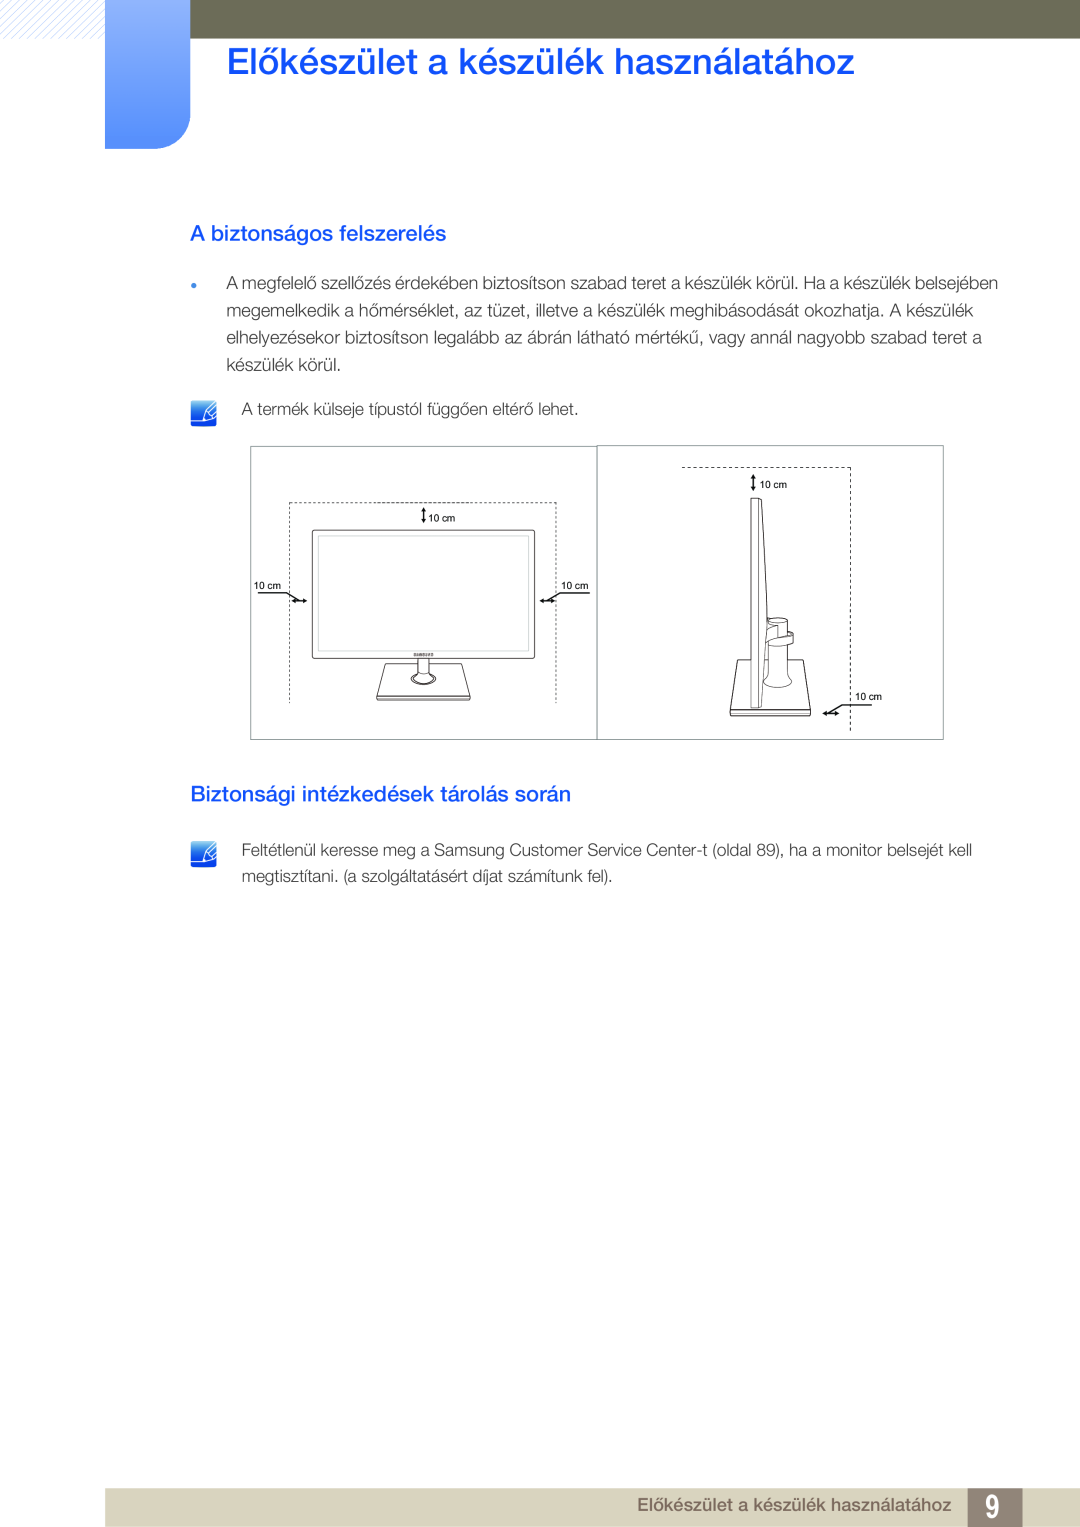 Samsung LS24C550VL/EN manual A biztonságos felszerelés, Biztonsági intézkedések tárolás során 